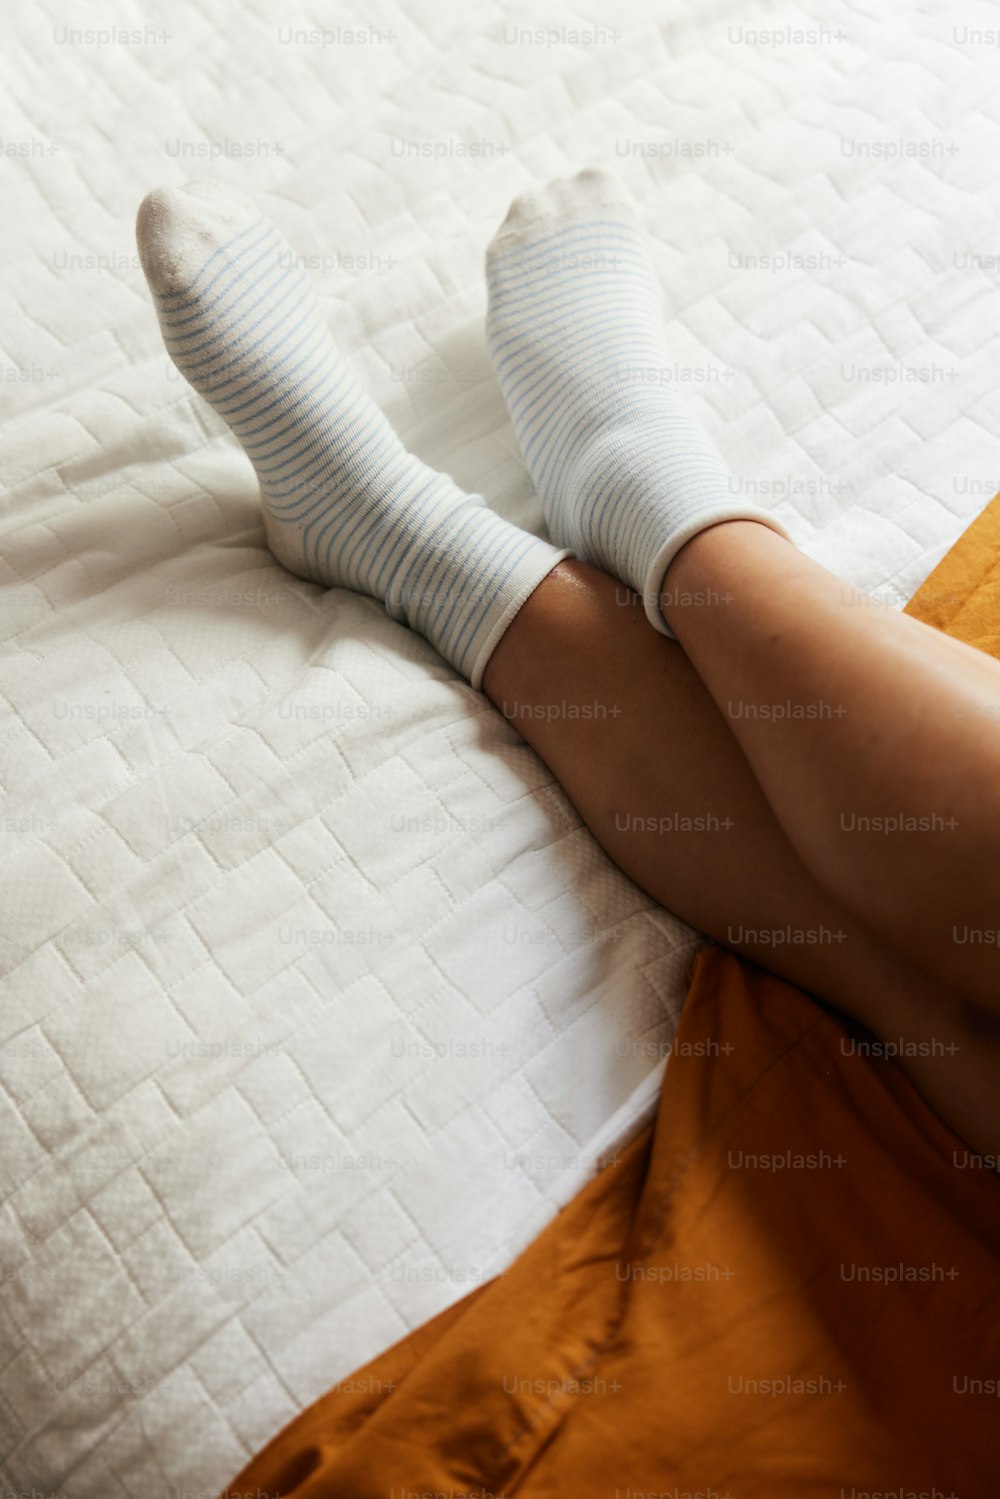 흰 양말을 신고 침대에 누워 있는 사람